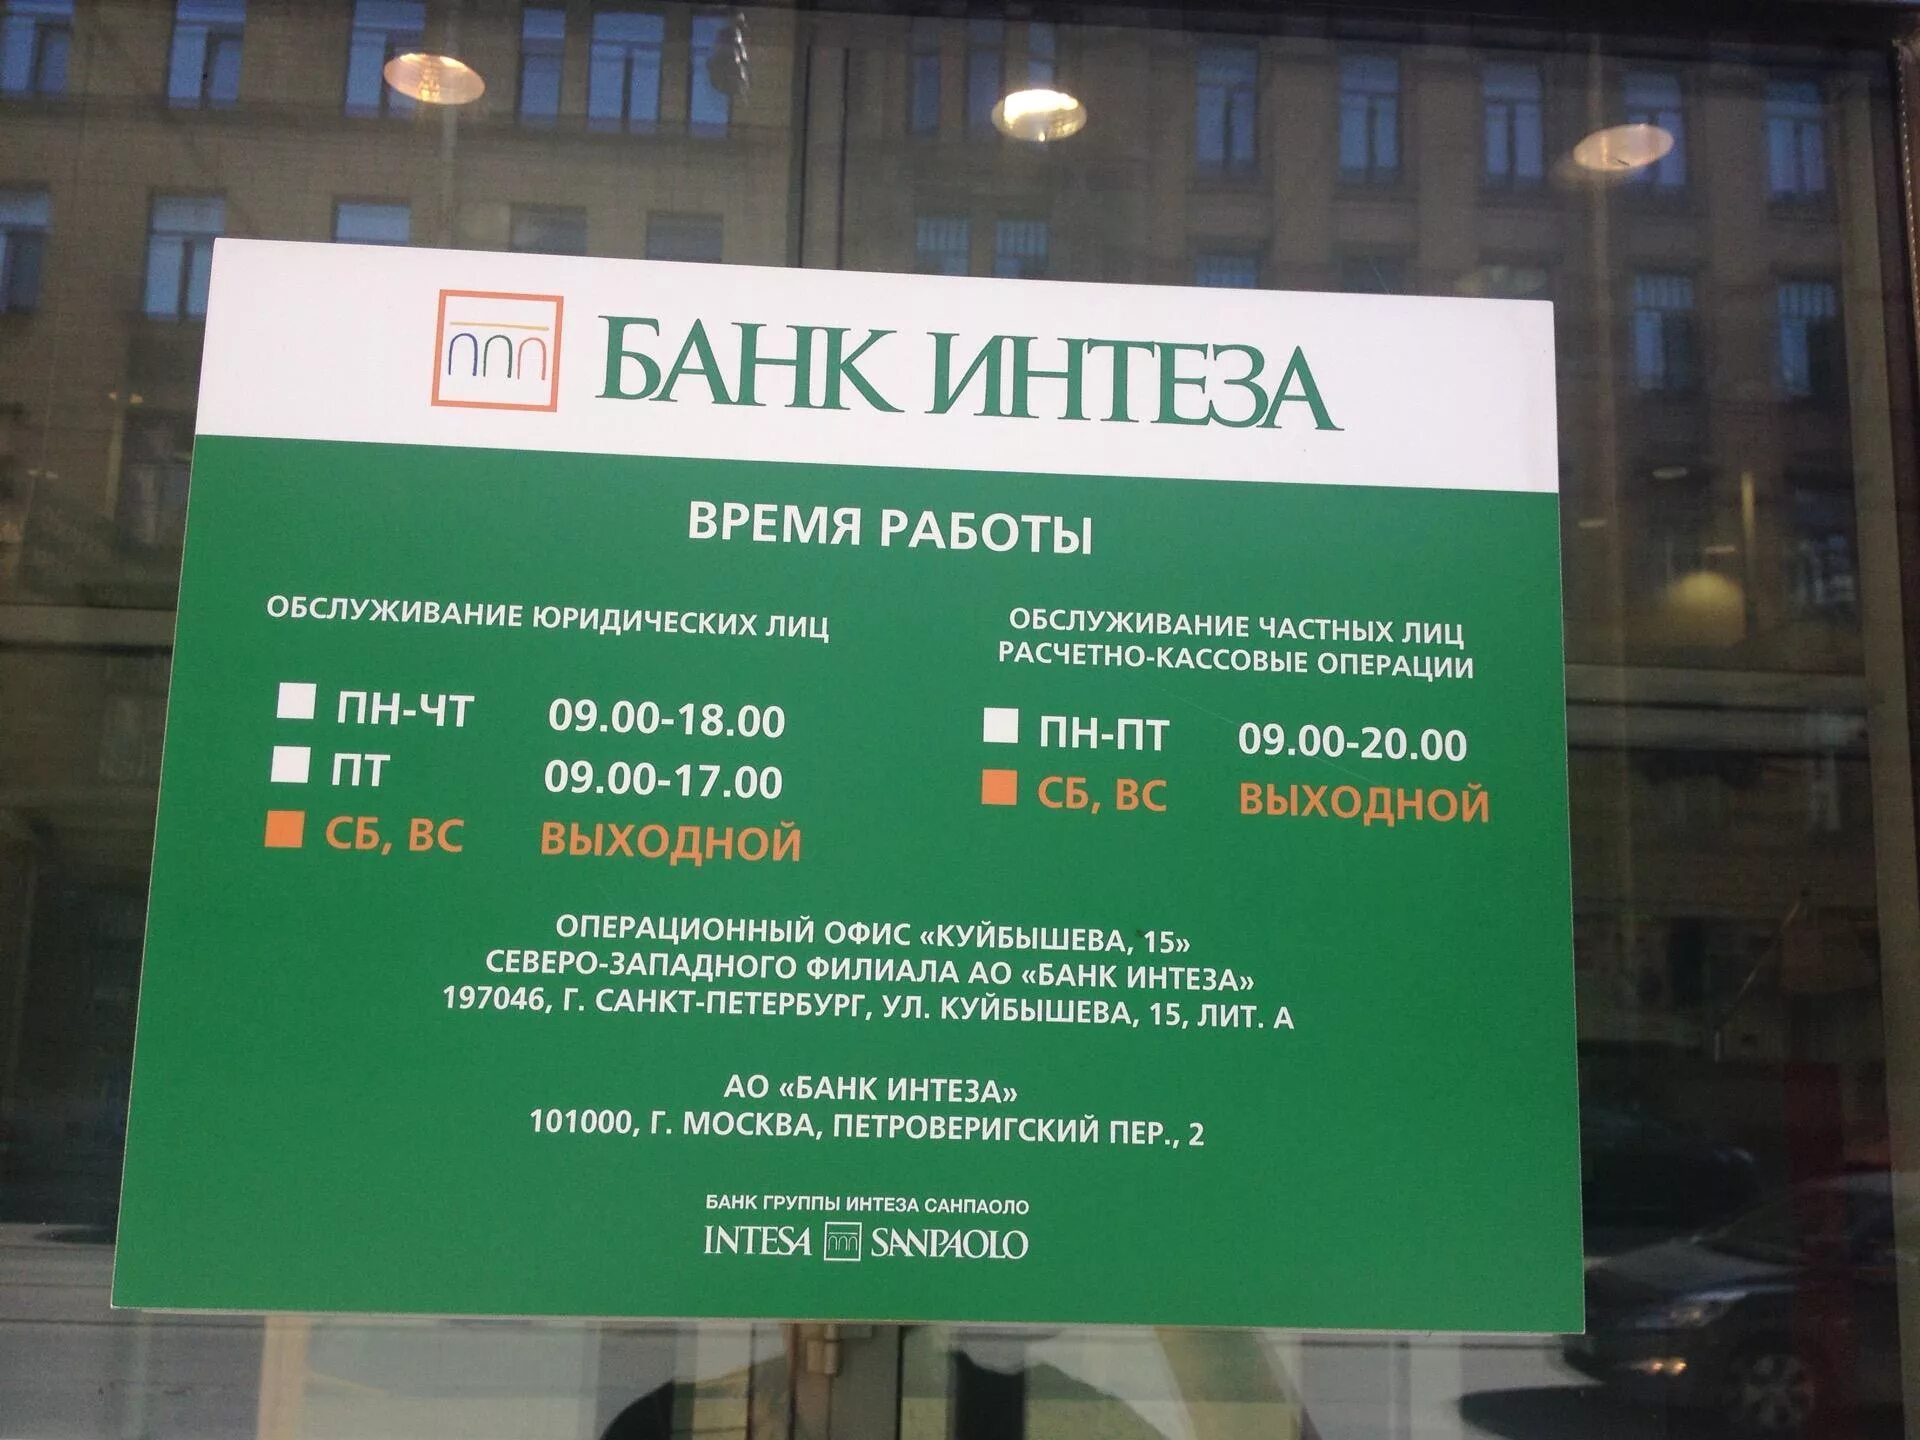 Завтра работает банк. Банк Интеза Москва. Расписание работы банка. Время работы банков. Банк часы работы.